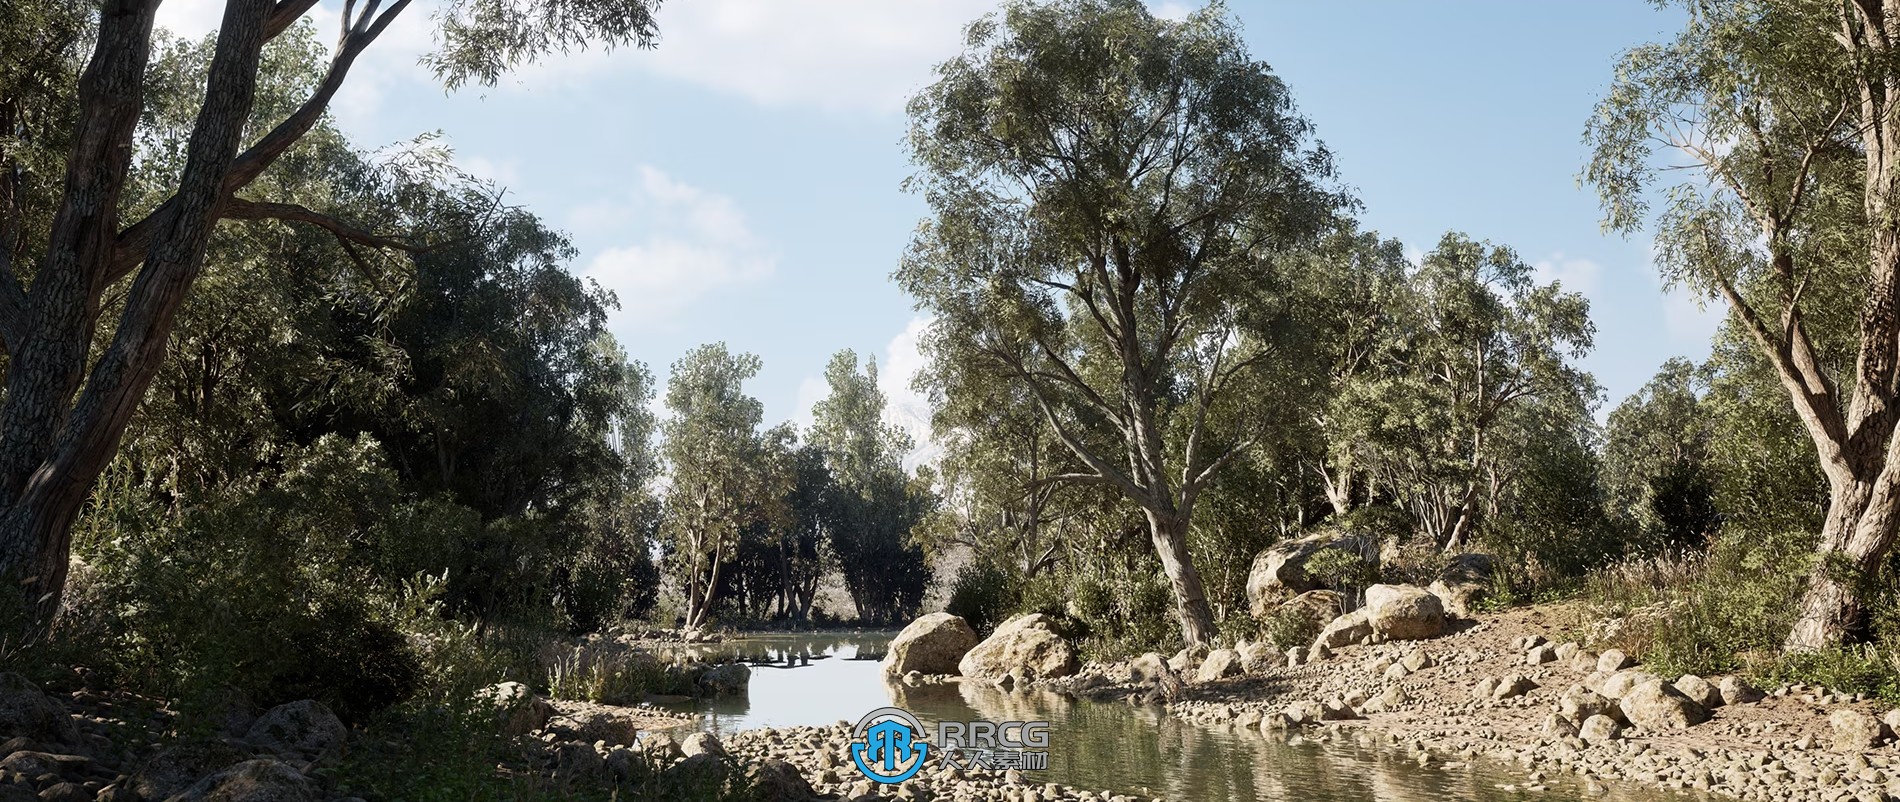 Unreal Engine虚幻引擎游戏素材合集2024年第八季